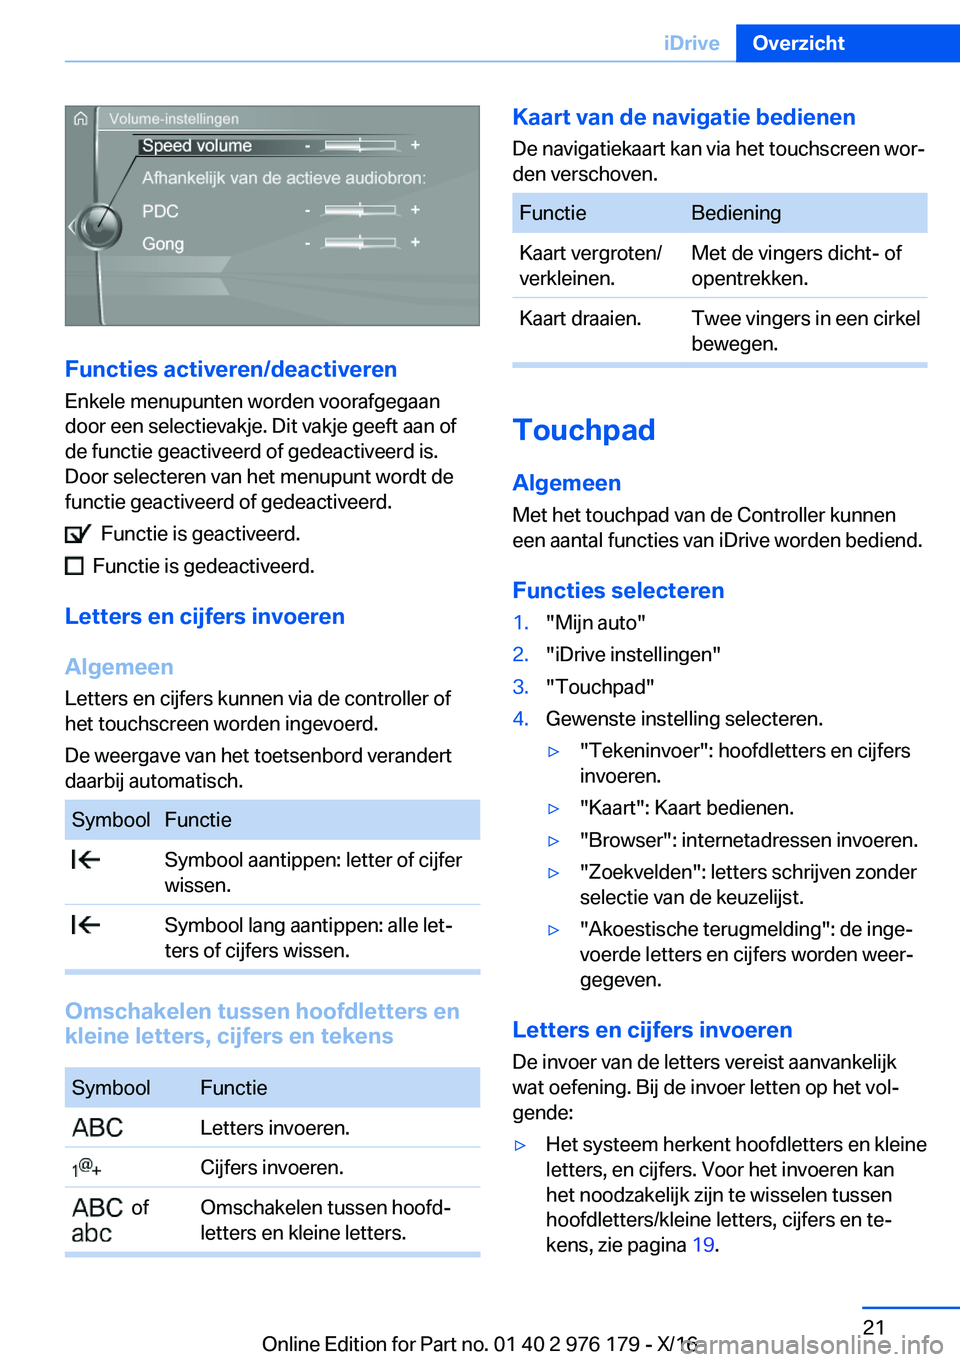 BMW X5 M 2017  Instructieboekjes (in Dutch) �F�u�n�c�t�i�e�s��a�c�t�i�v�e�r�e�n�/�d�e�a�c�t�i�v�e�r�e�n
�E�n�k�e�l�e� �m�e�n�u�p�u�n�t�e�n� �w�o�r�d�e�n� �v�o�o�r�a�f�g�e�g�a�a�n
�d�o�o�r� �e�e�n� �s�e�l�e�c�t�i�e�v�a�k�j�e�.� �D�i�t� �v�a�k�j